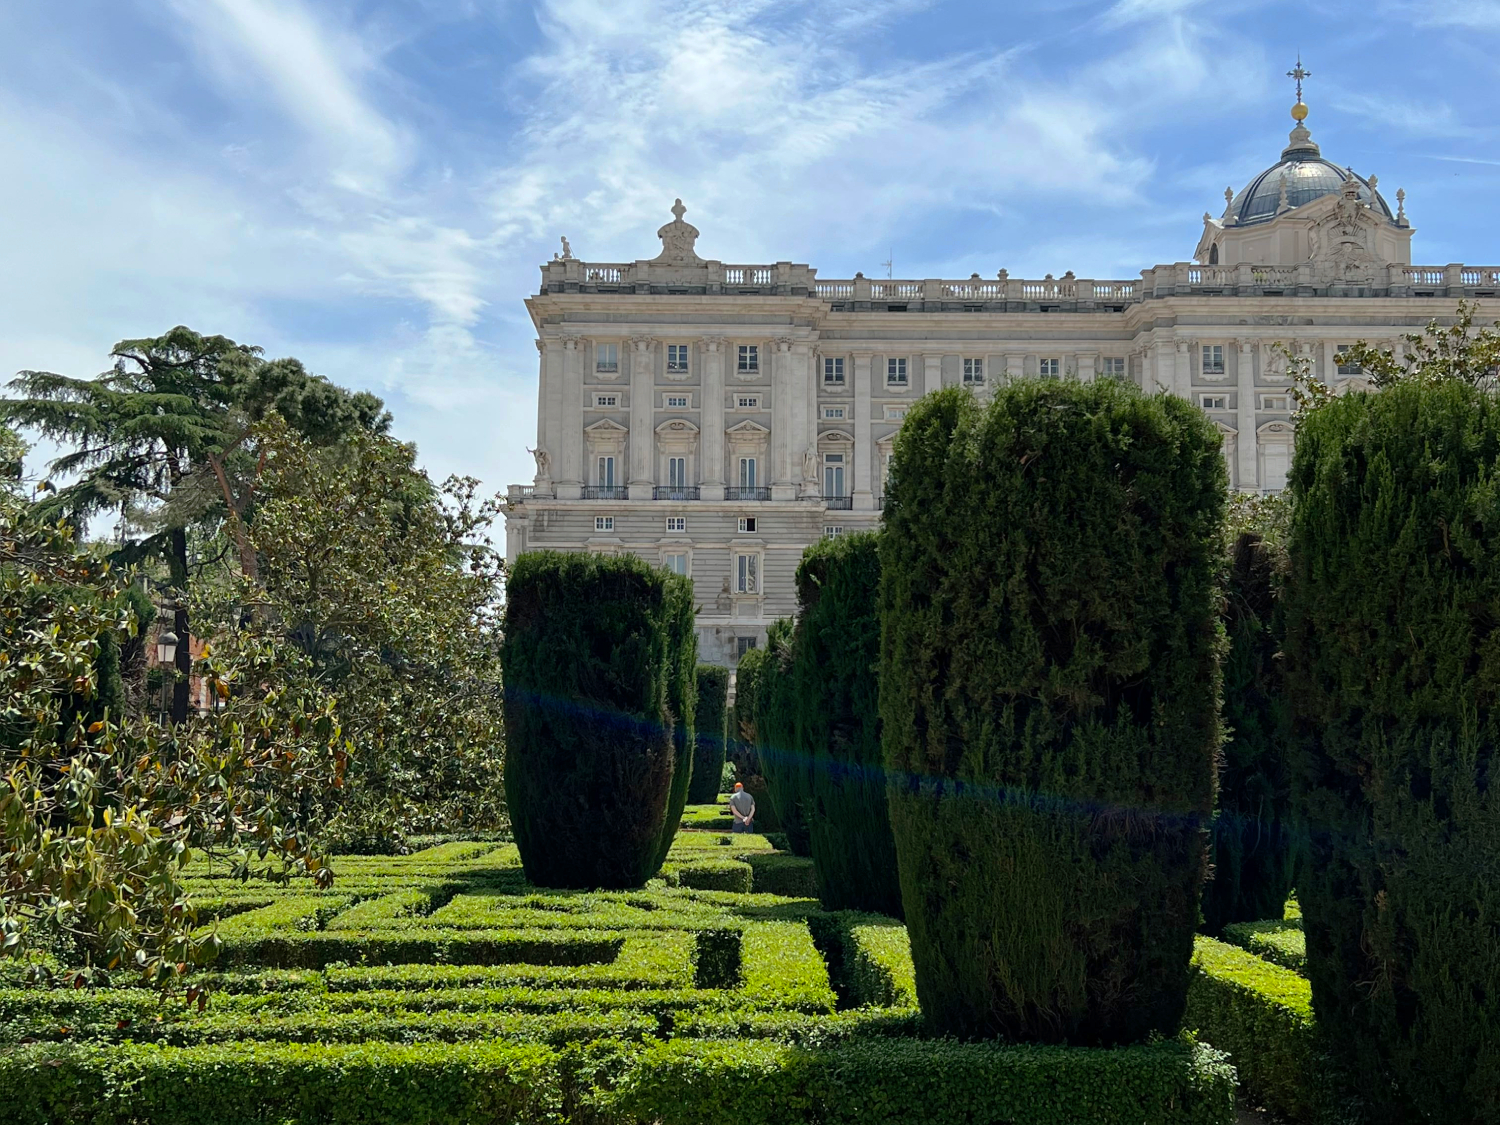 Jardines de Sabatini, Madrid, Spain